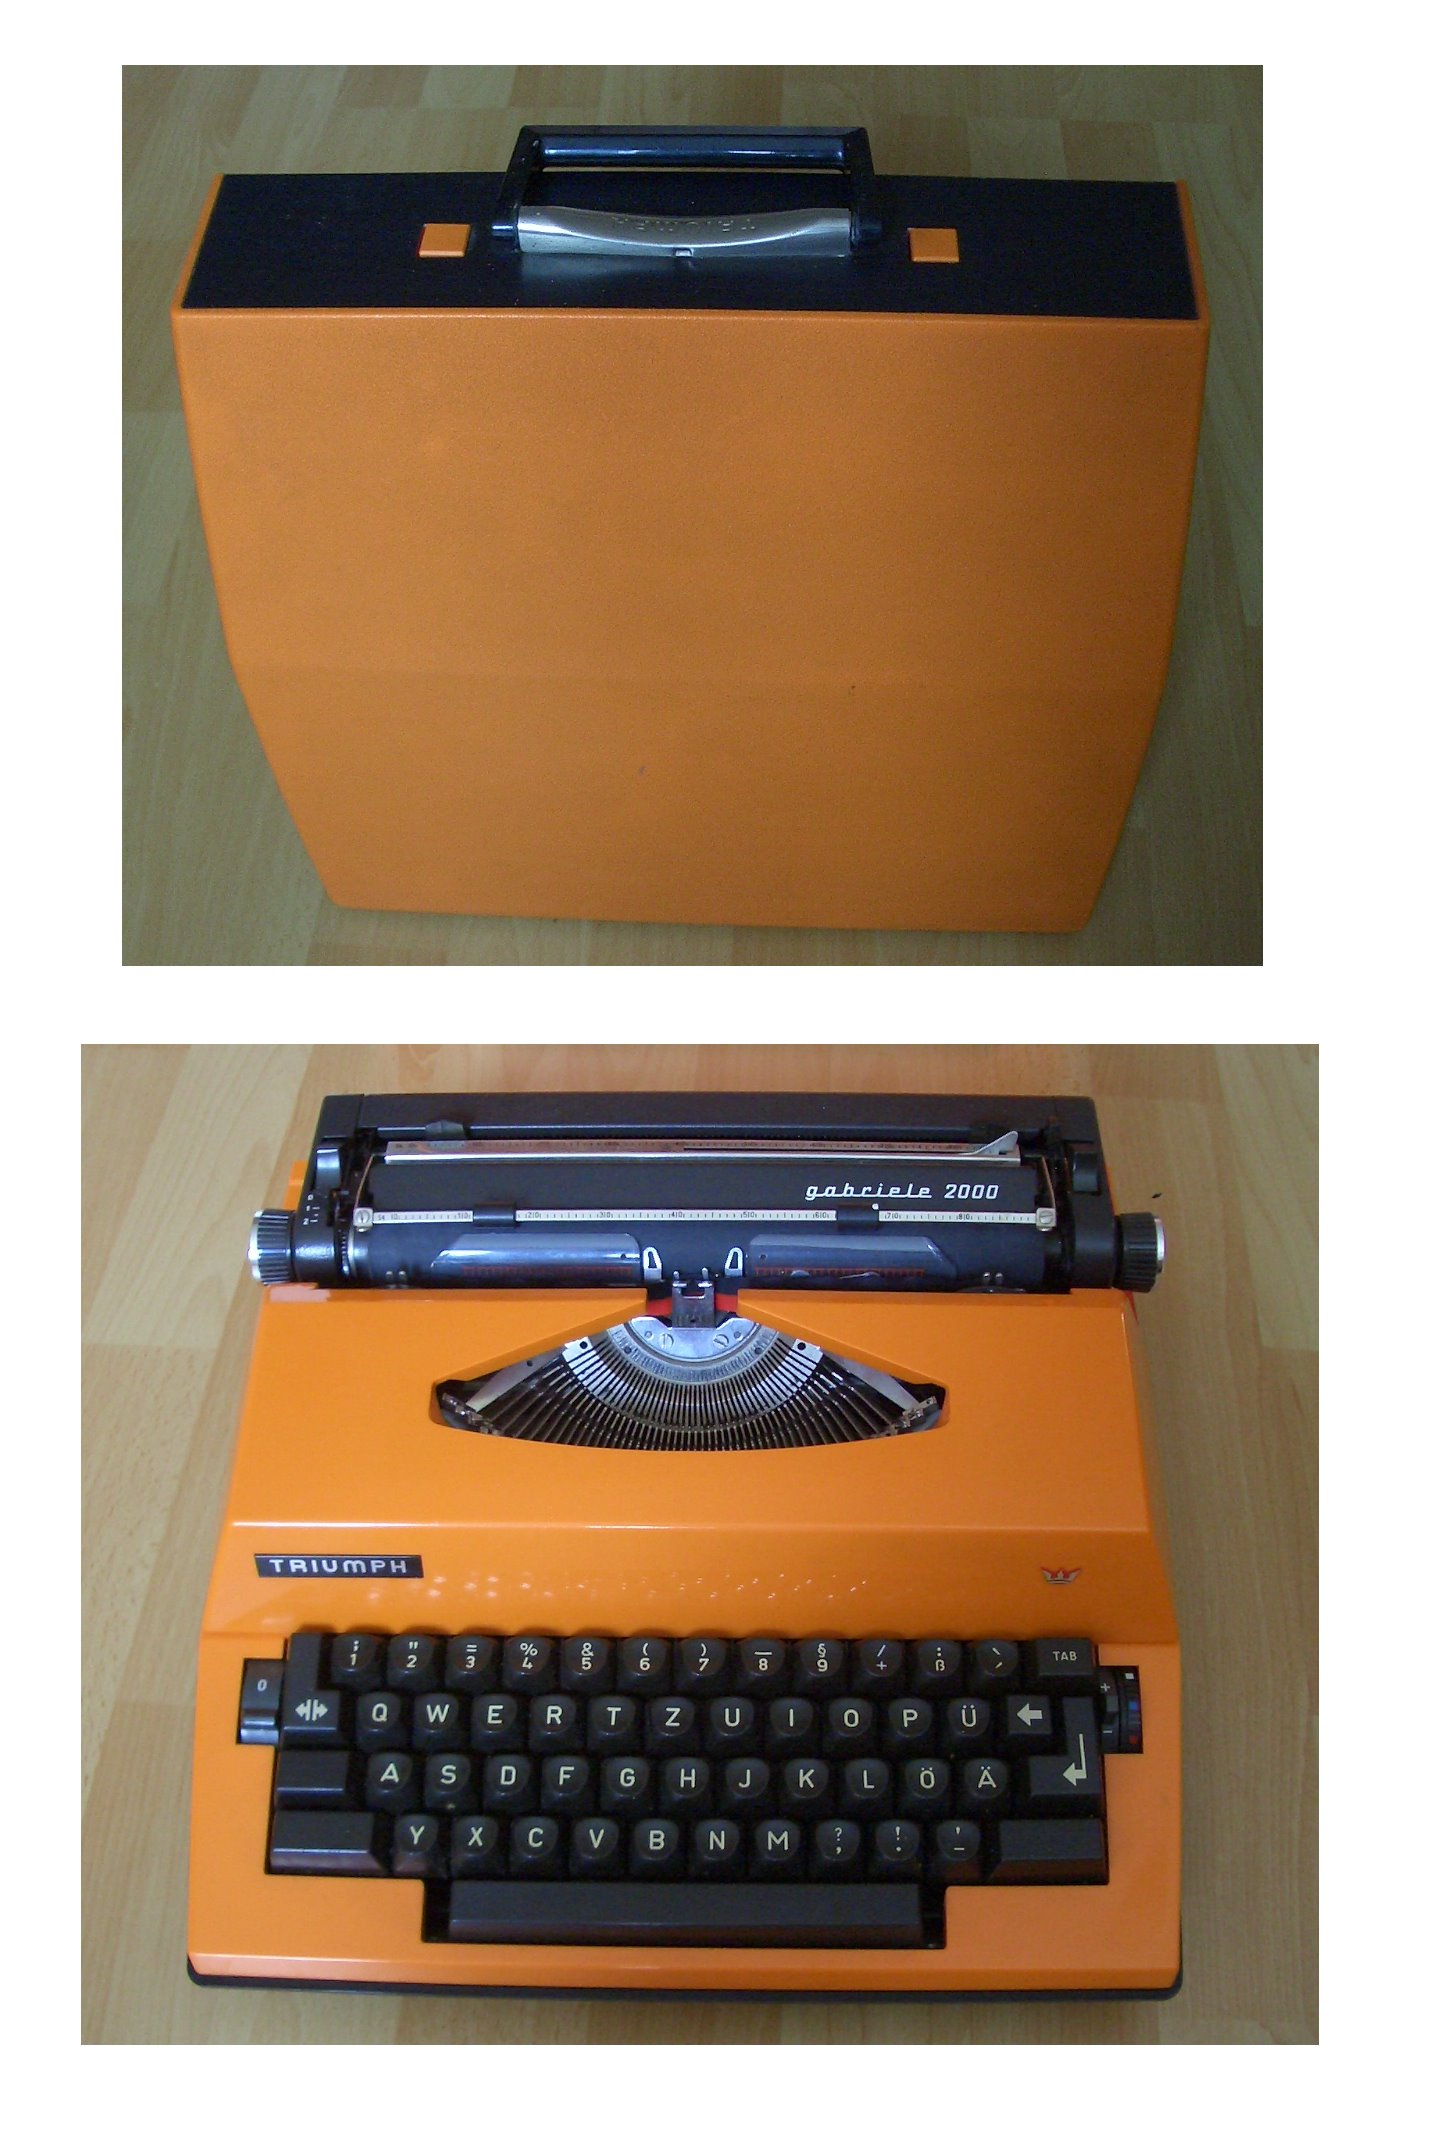 Schreibmaschine - SchlossHeld, das Portal für Schlüsseldienste